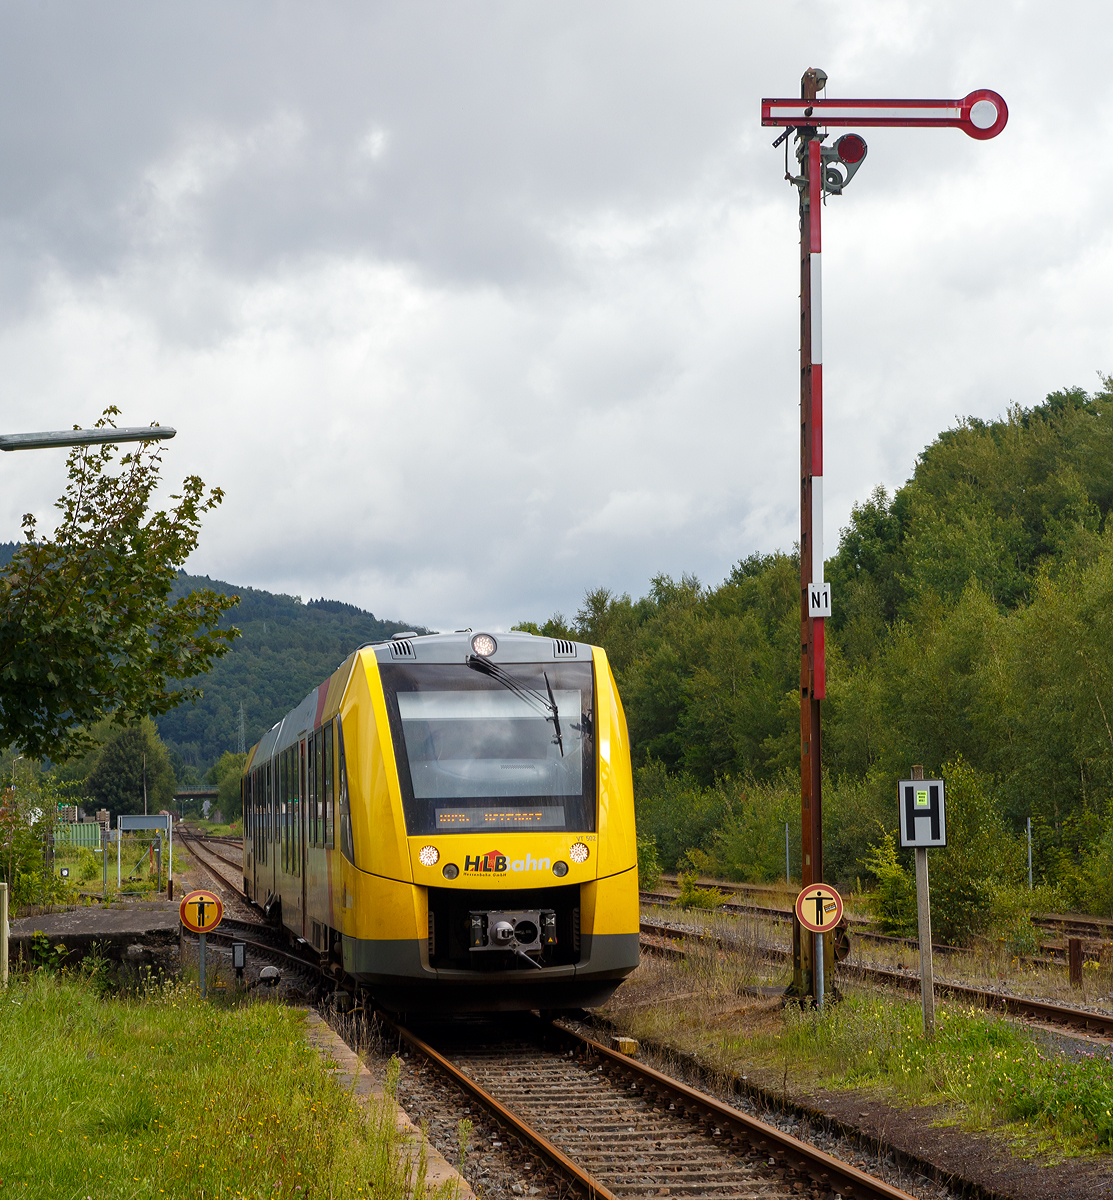 
Auf der Rheintalstrecke muss man z.Z. zwischen Rastatt und Baden-Baden auf die Straße umsteigen, hier ist es genau umgekehrt...
Da die direkte Straßenverbindung zwischen Herdorf und Betzdorf, wegen Brückenbauarbeiten, gesperrt ist steigt man hier auf die Schiene um. 

Hier erreicht der VT 502 (95 80 1648 102-9 D-HEB / 95 80 1648 602-8 D-HEB) ein Alstom Coradia LINT 41 der HLB (Hessische Landesbahn GmbH) am 20.08.2017, als RB 96  Hellertalbahn  (Dillenburg - Haiger - Neunkirchen - Herdorf - Betzdorf), den Bahnhof Herdorf. 